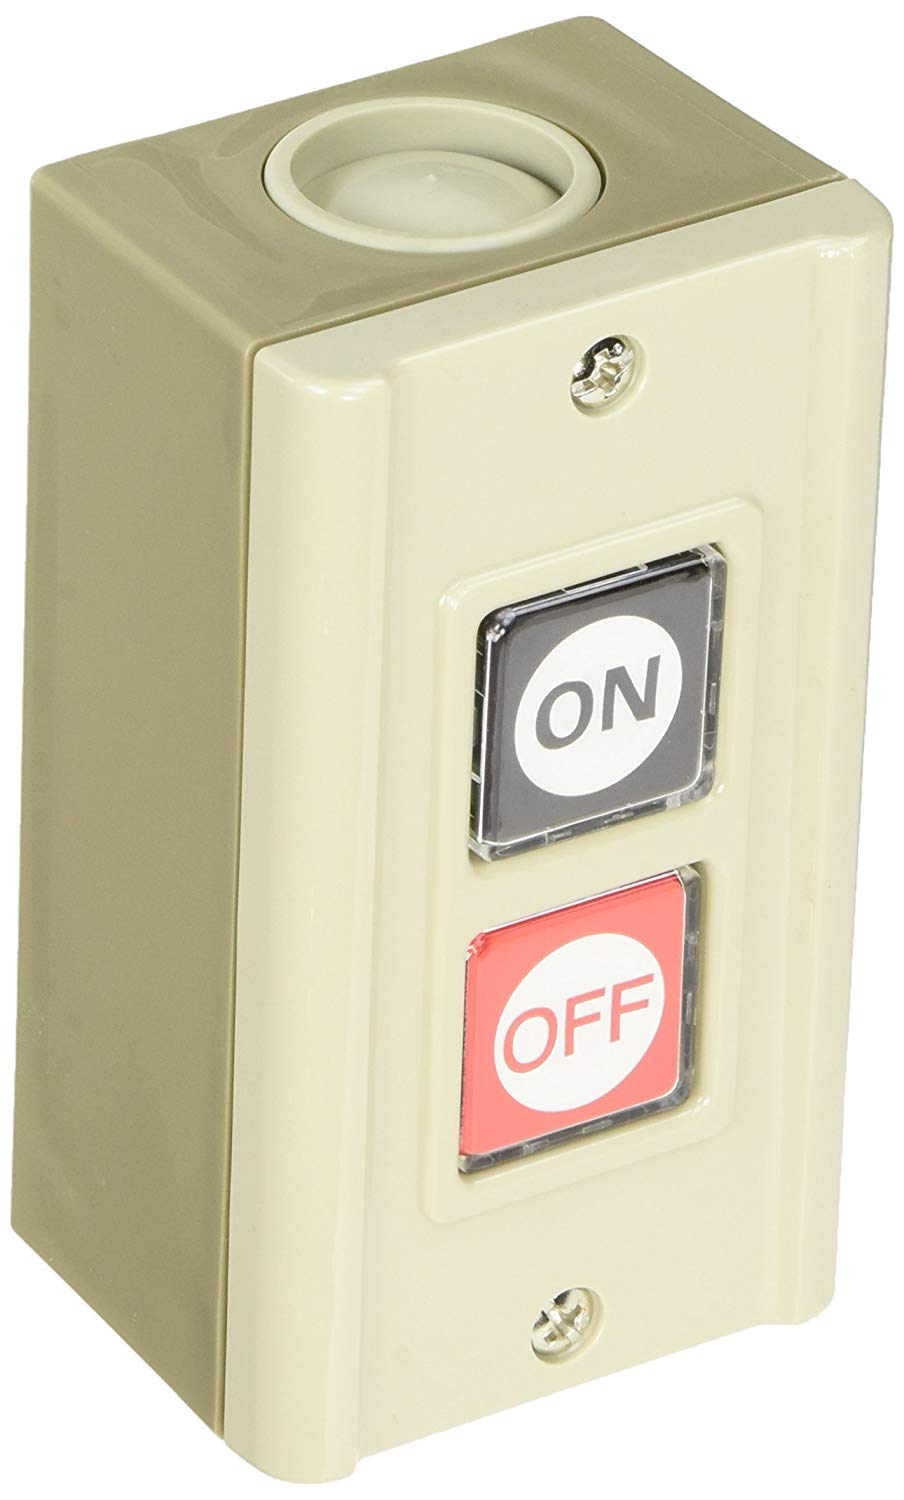 押しボタンスイッチとは、スイッチの種類、記号 | 電気工事のwebbook